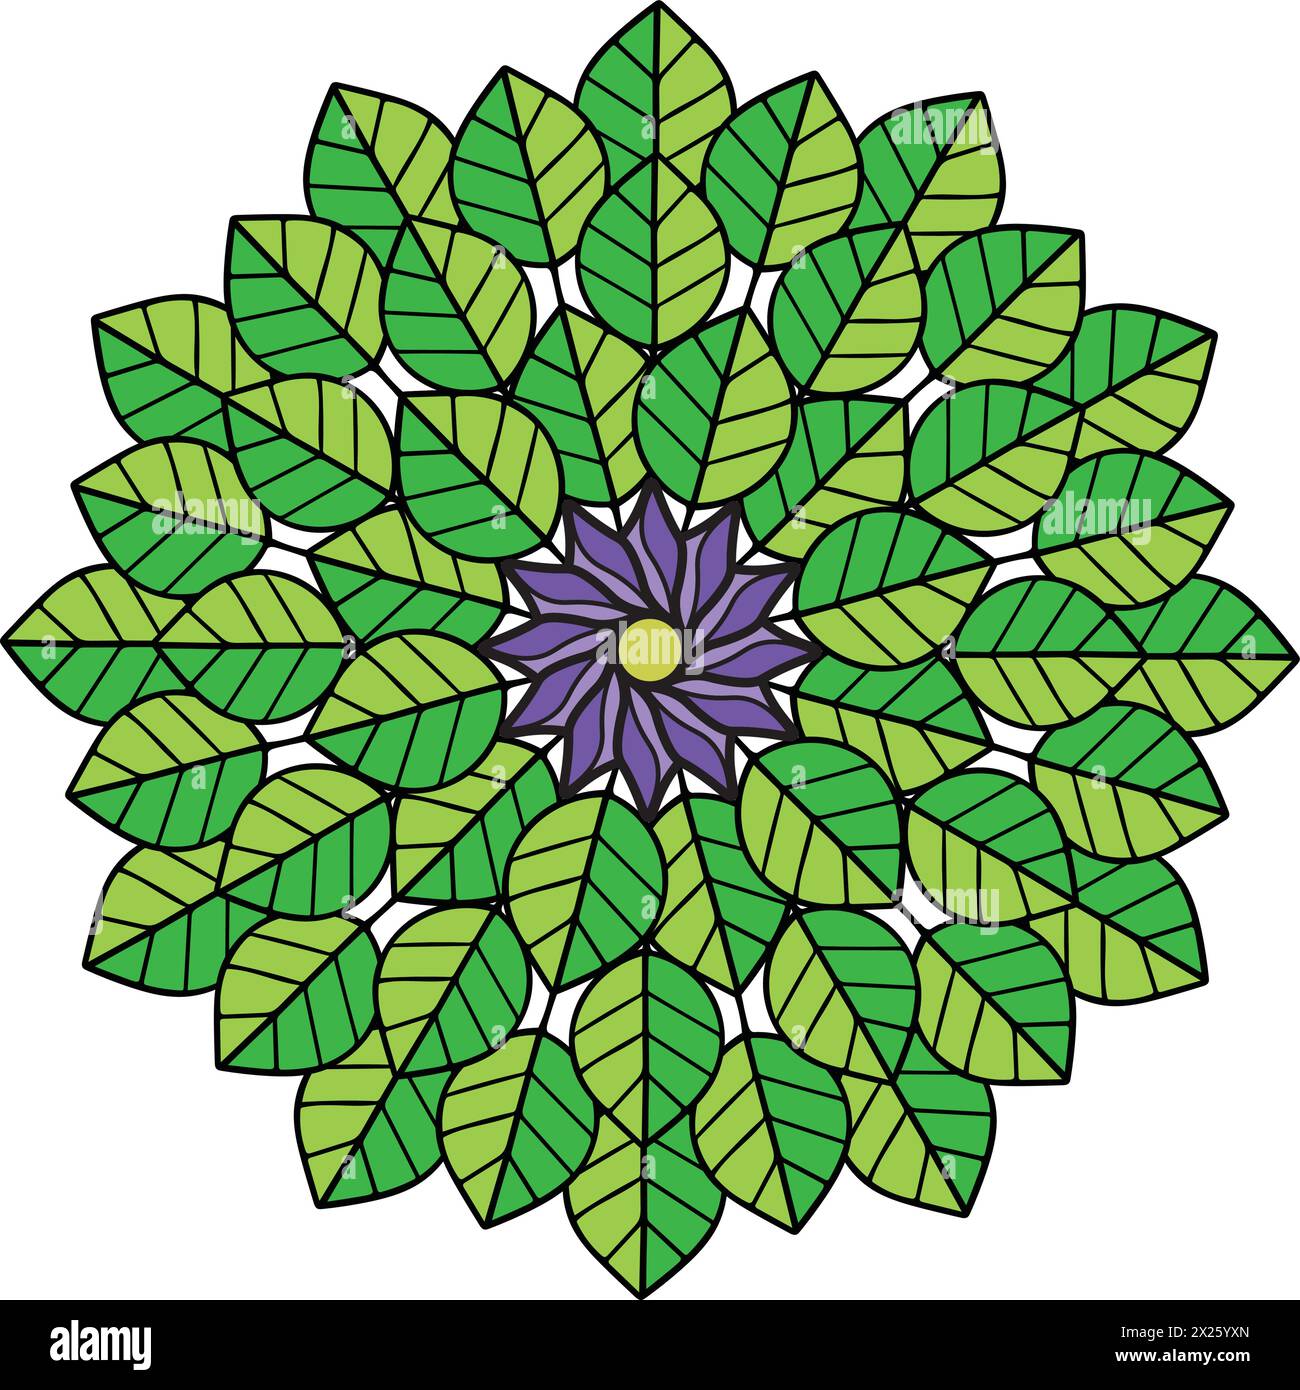 cerchio di foglie verdi con un fiore viola al centro, perfetto per l'uso in progetti di web design e grafica Illustrazione Vettoriale